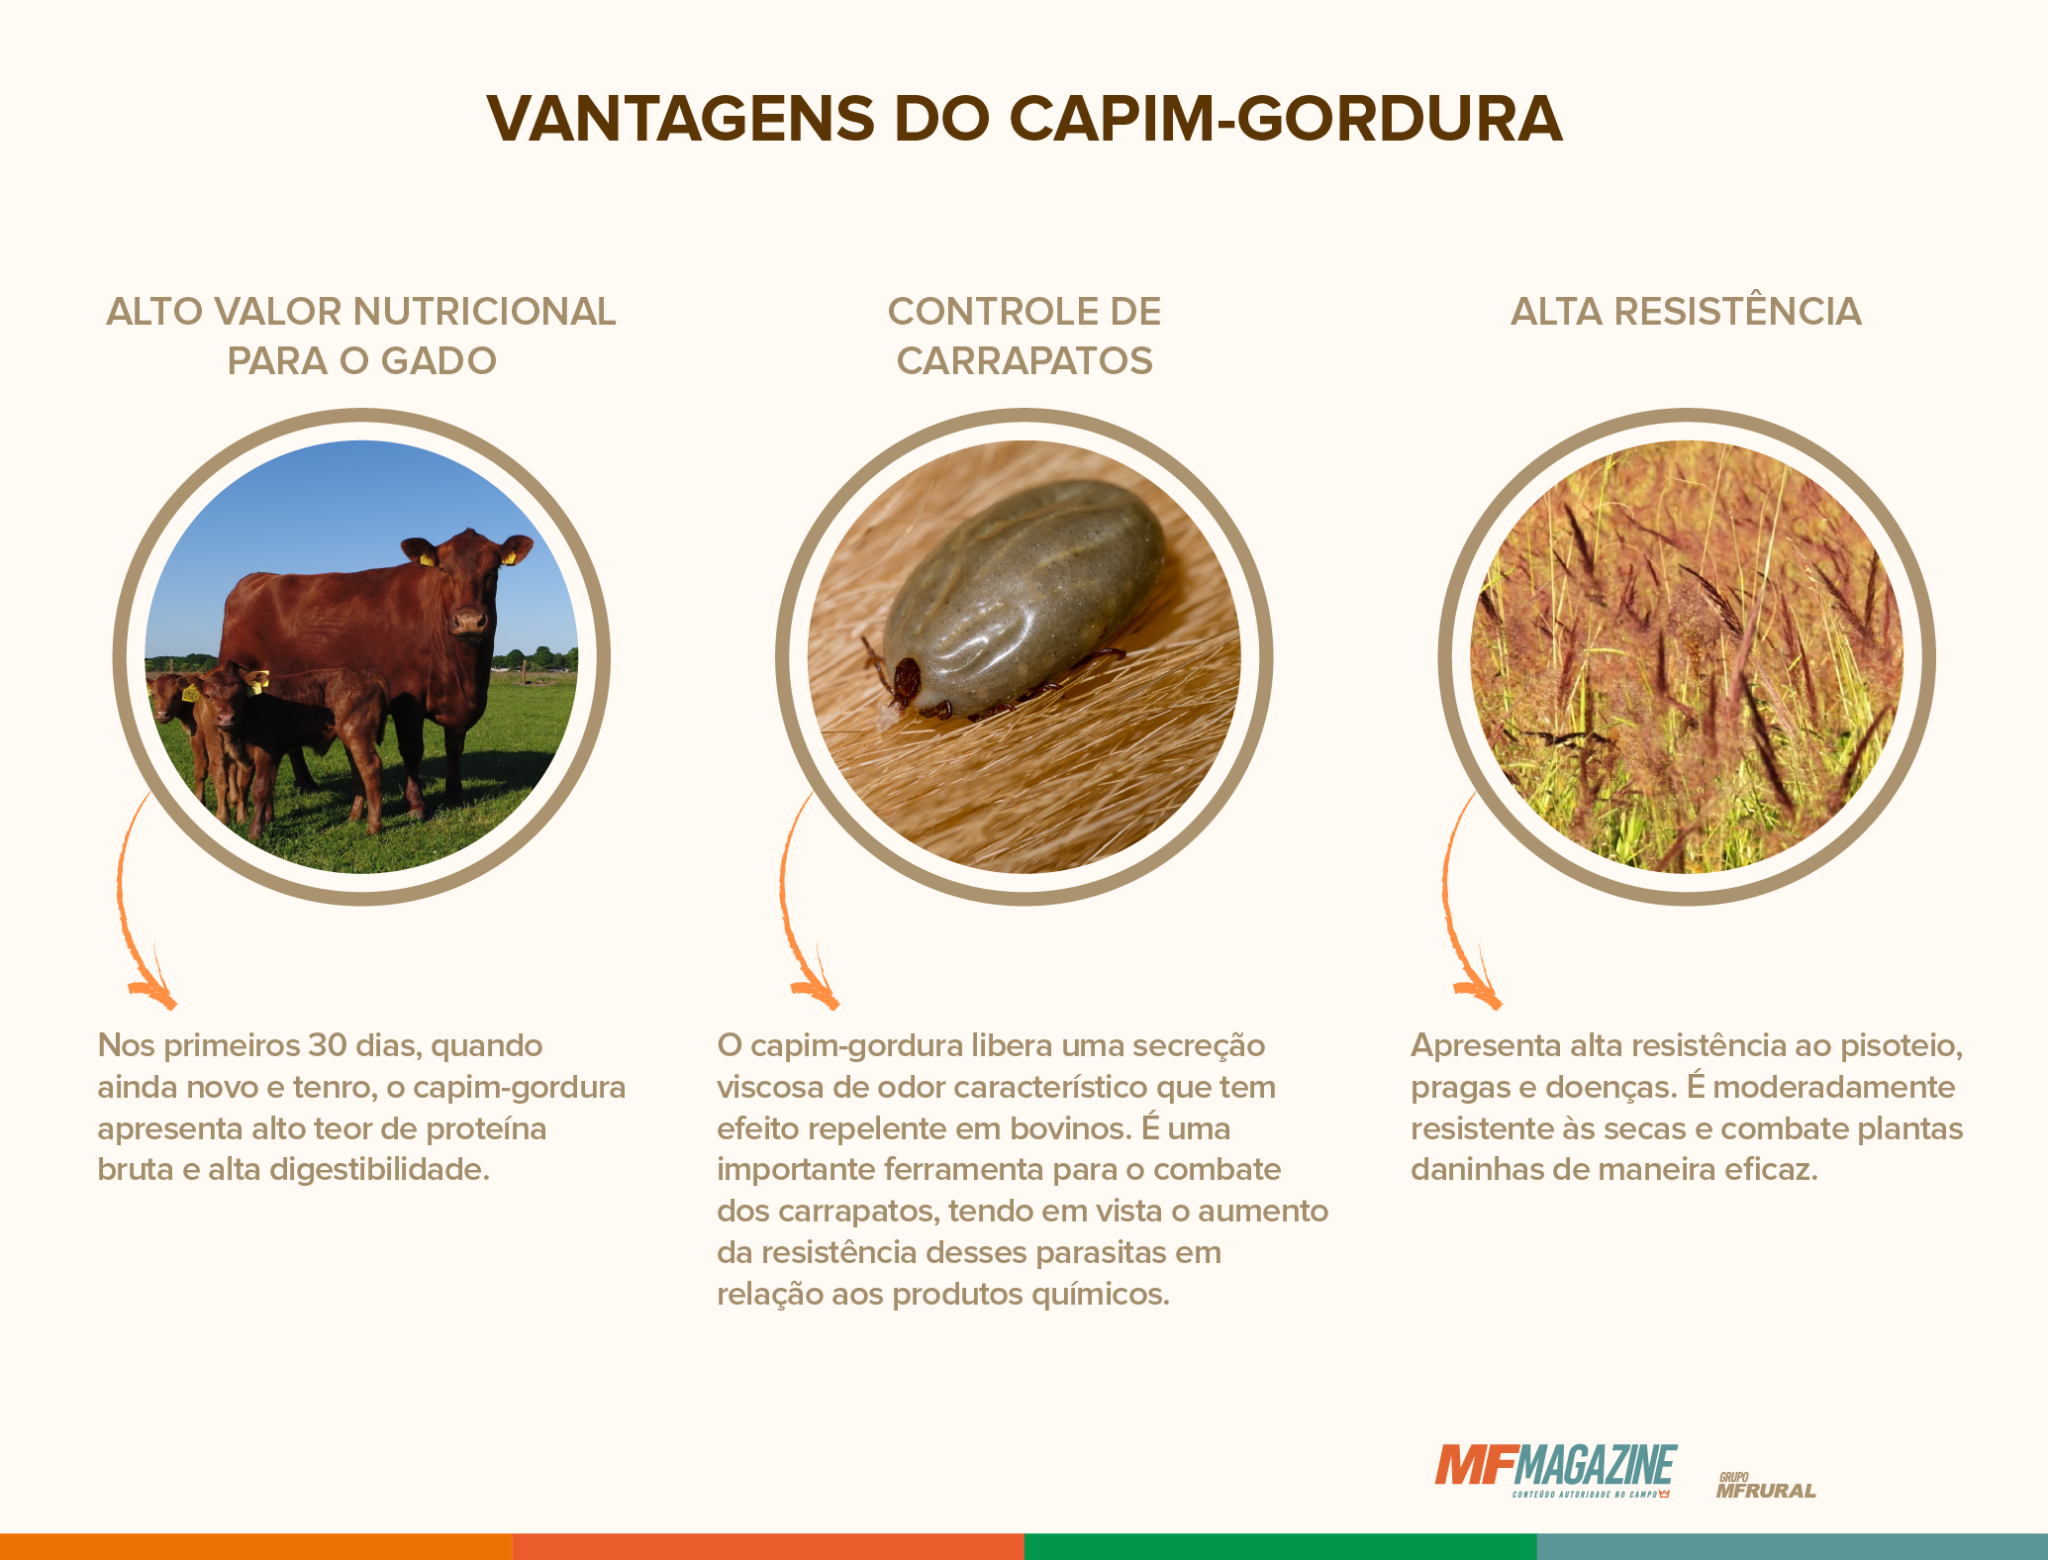 Quadro contendo as vantagens de plantio do capim-gordura, dividido em três tópicos: alto valor nutricional para o gado, controle de carrapatos e alta resistência